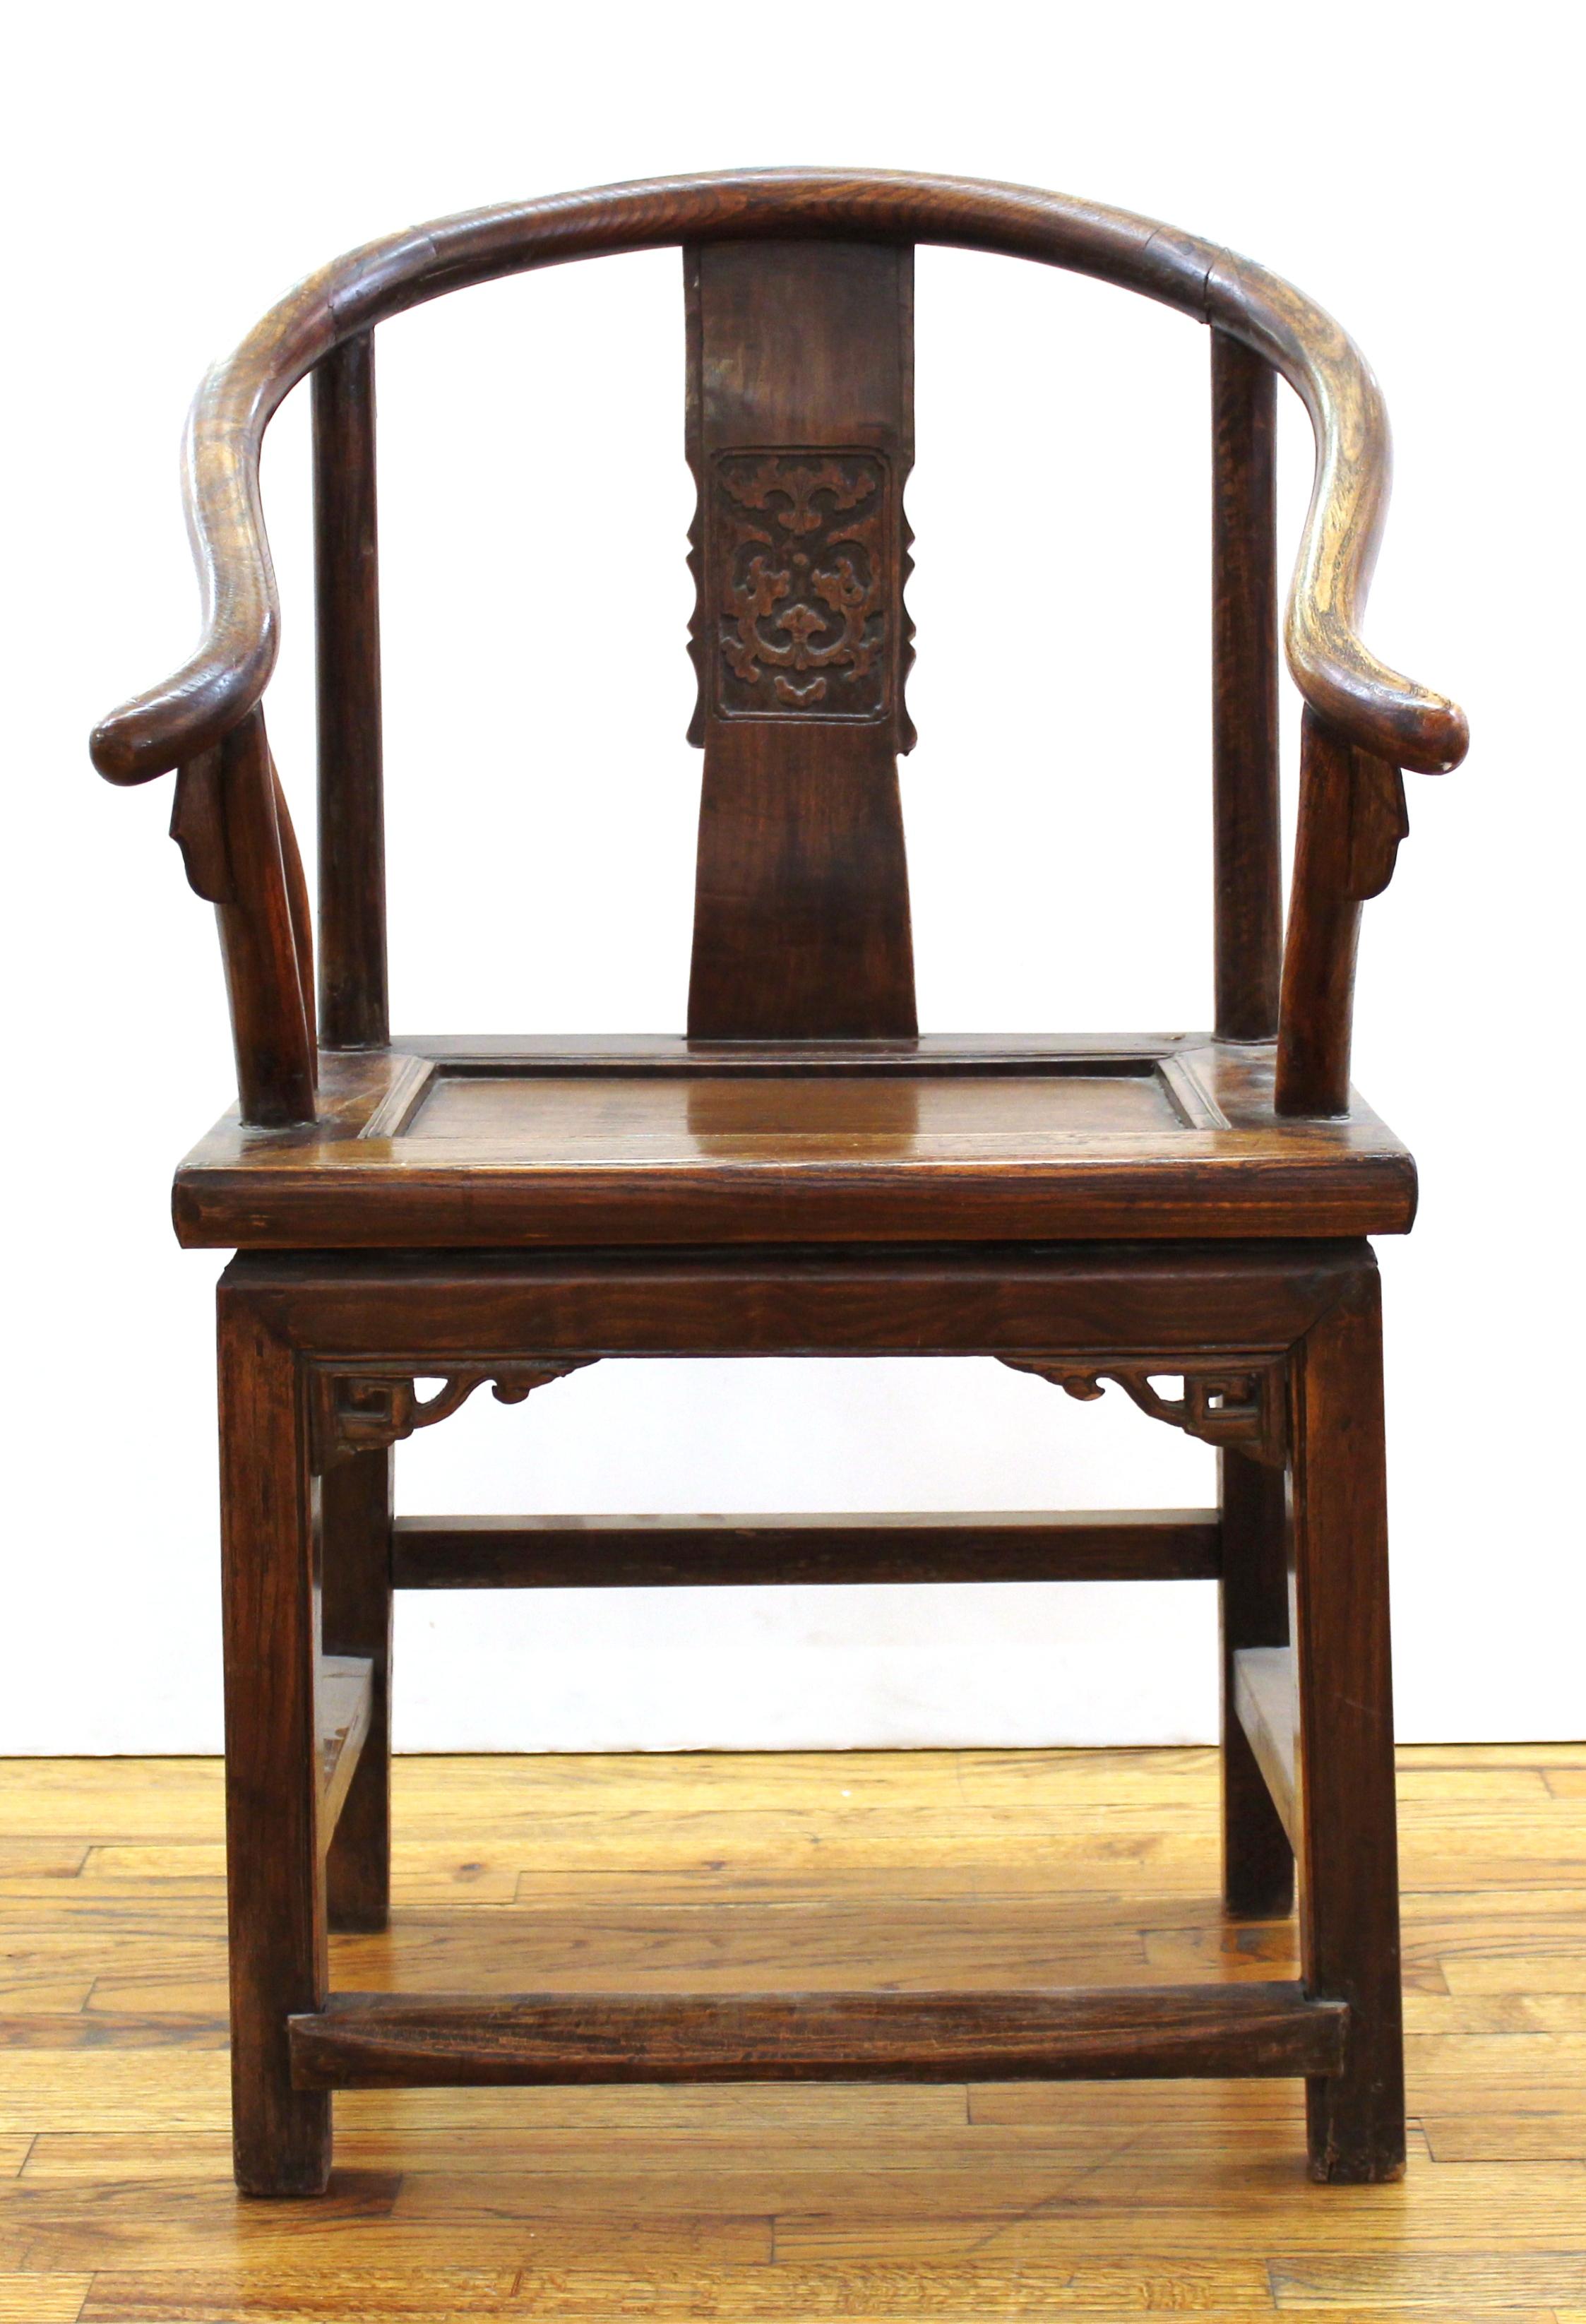 Fauteuil chinois ancien à dossier en fer à cheval en bois sculpté. Sceau d'exportation Jian Ding au dos du siège.